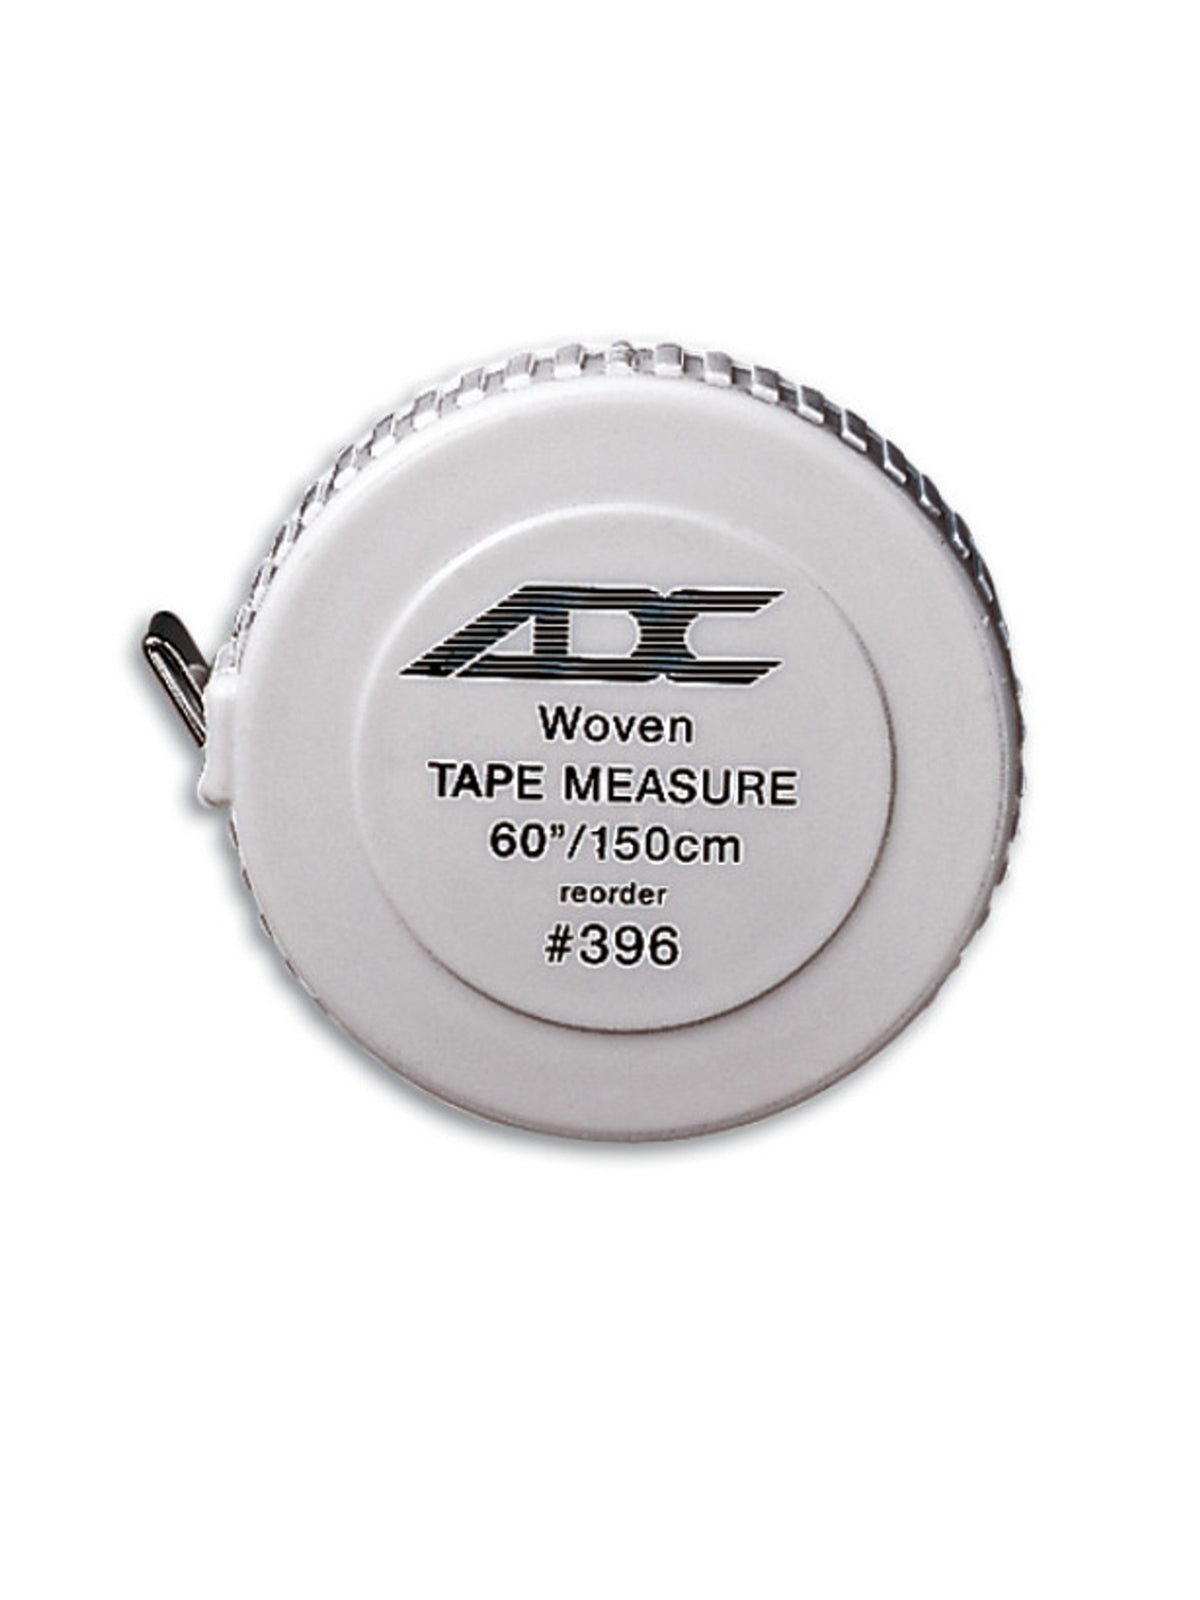 Woven Tape Measure - AD396Q - White